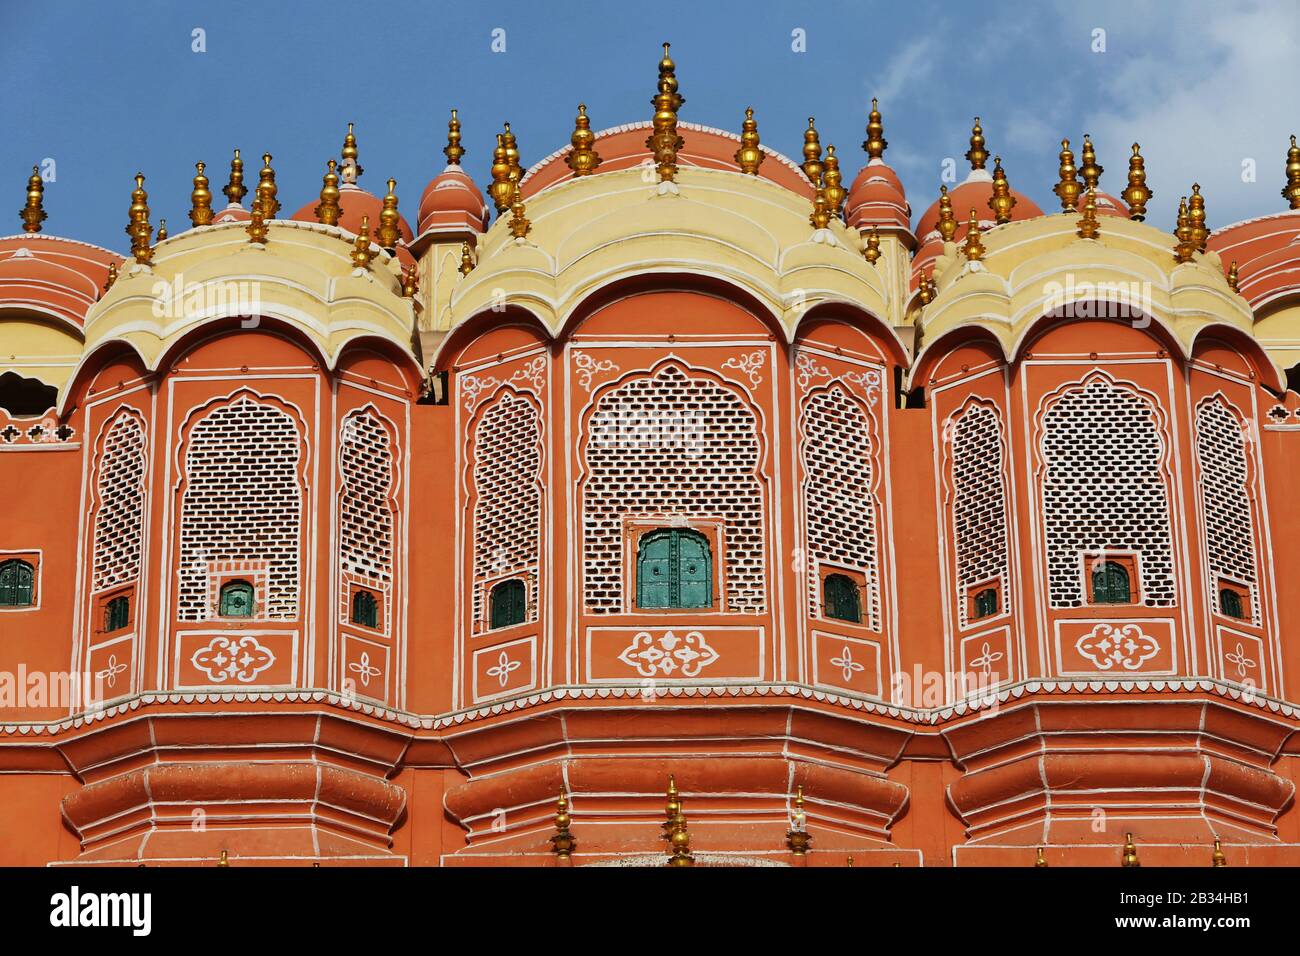 Détail des fenêtres, Palais des vents, Hawa Mahal, Jaipur, Rajasthan, Inde Banque D'Images